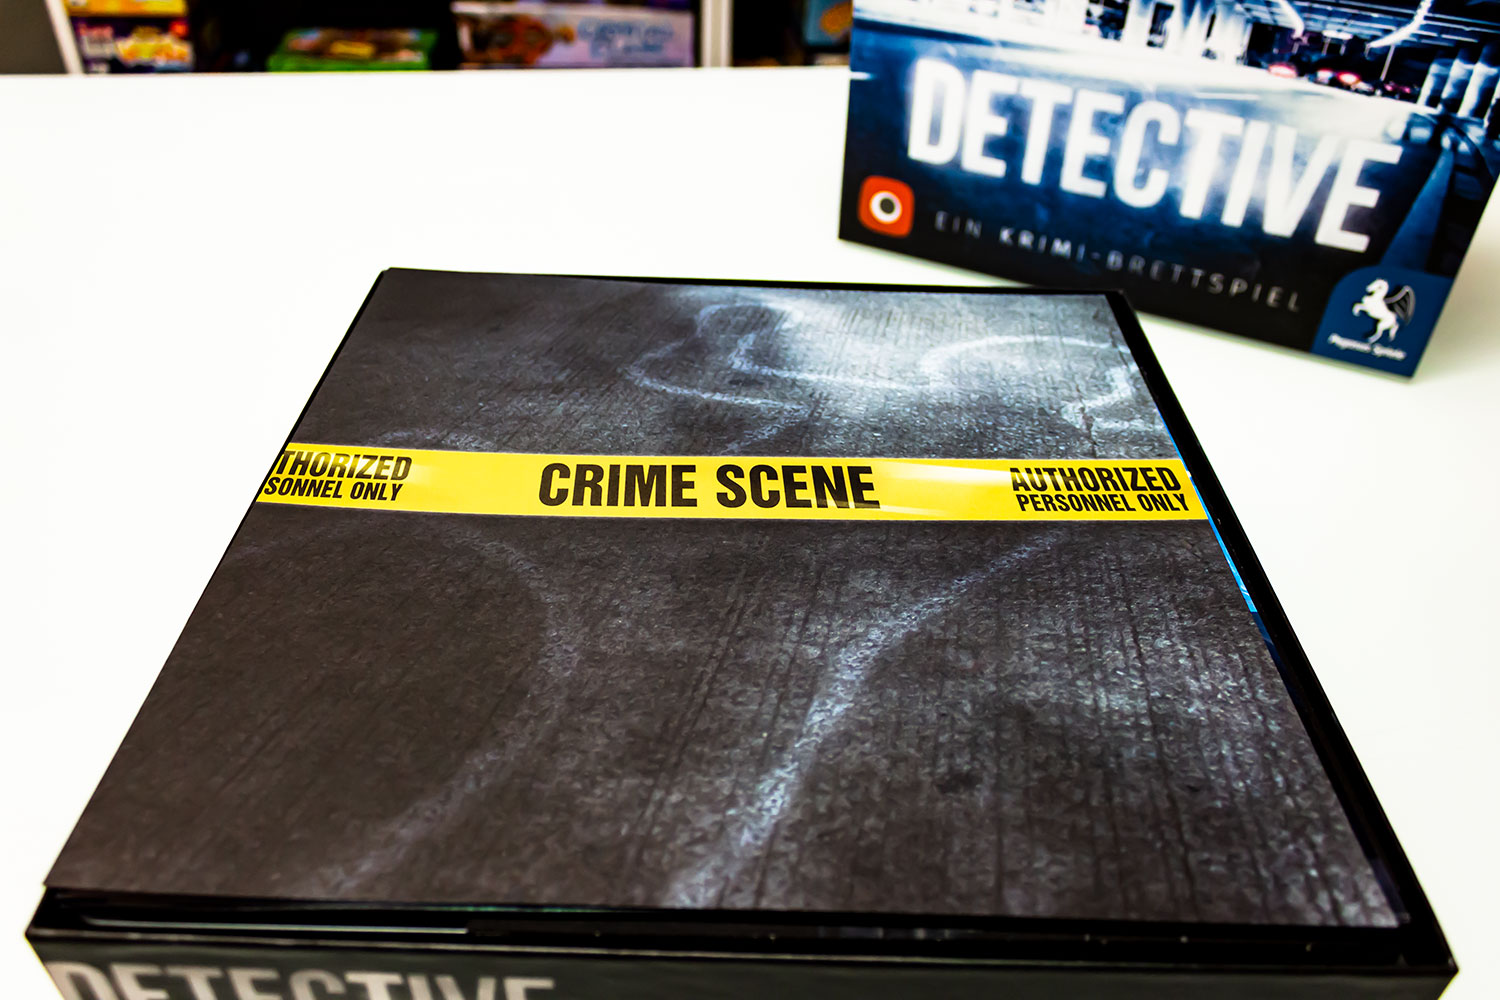 Detective – Das Krimi-Brettspiel ist verfügbar - erste Bilder